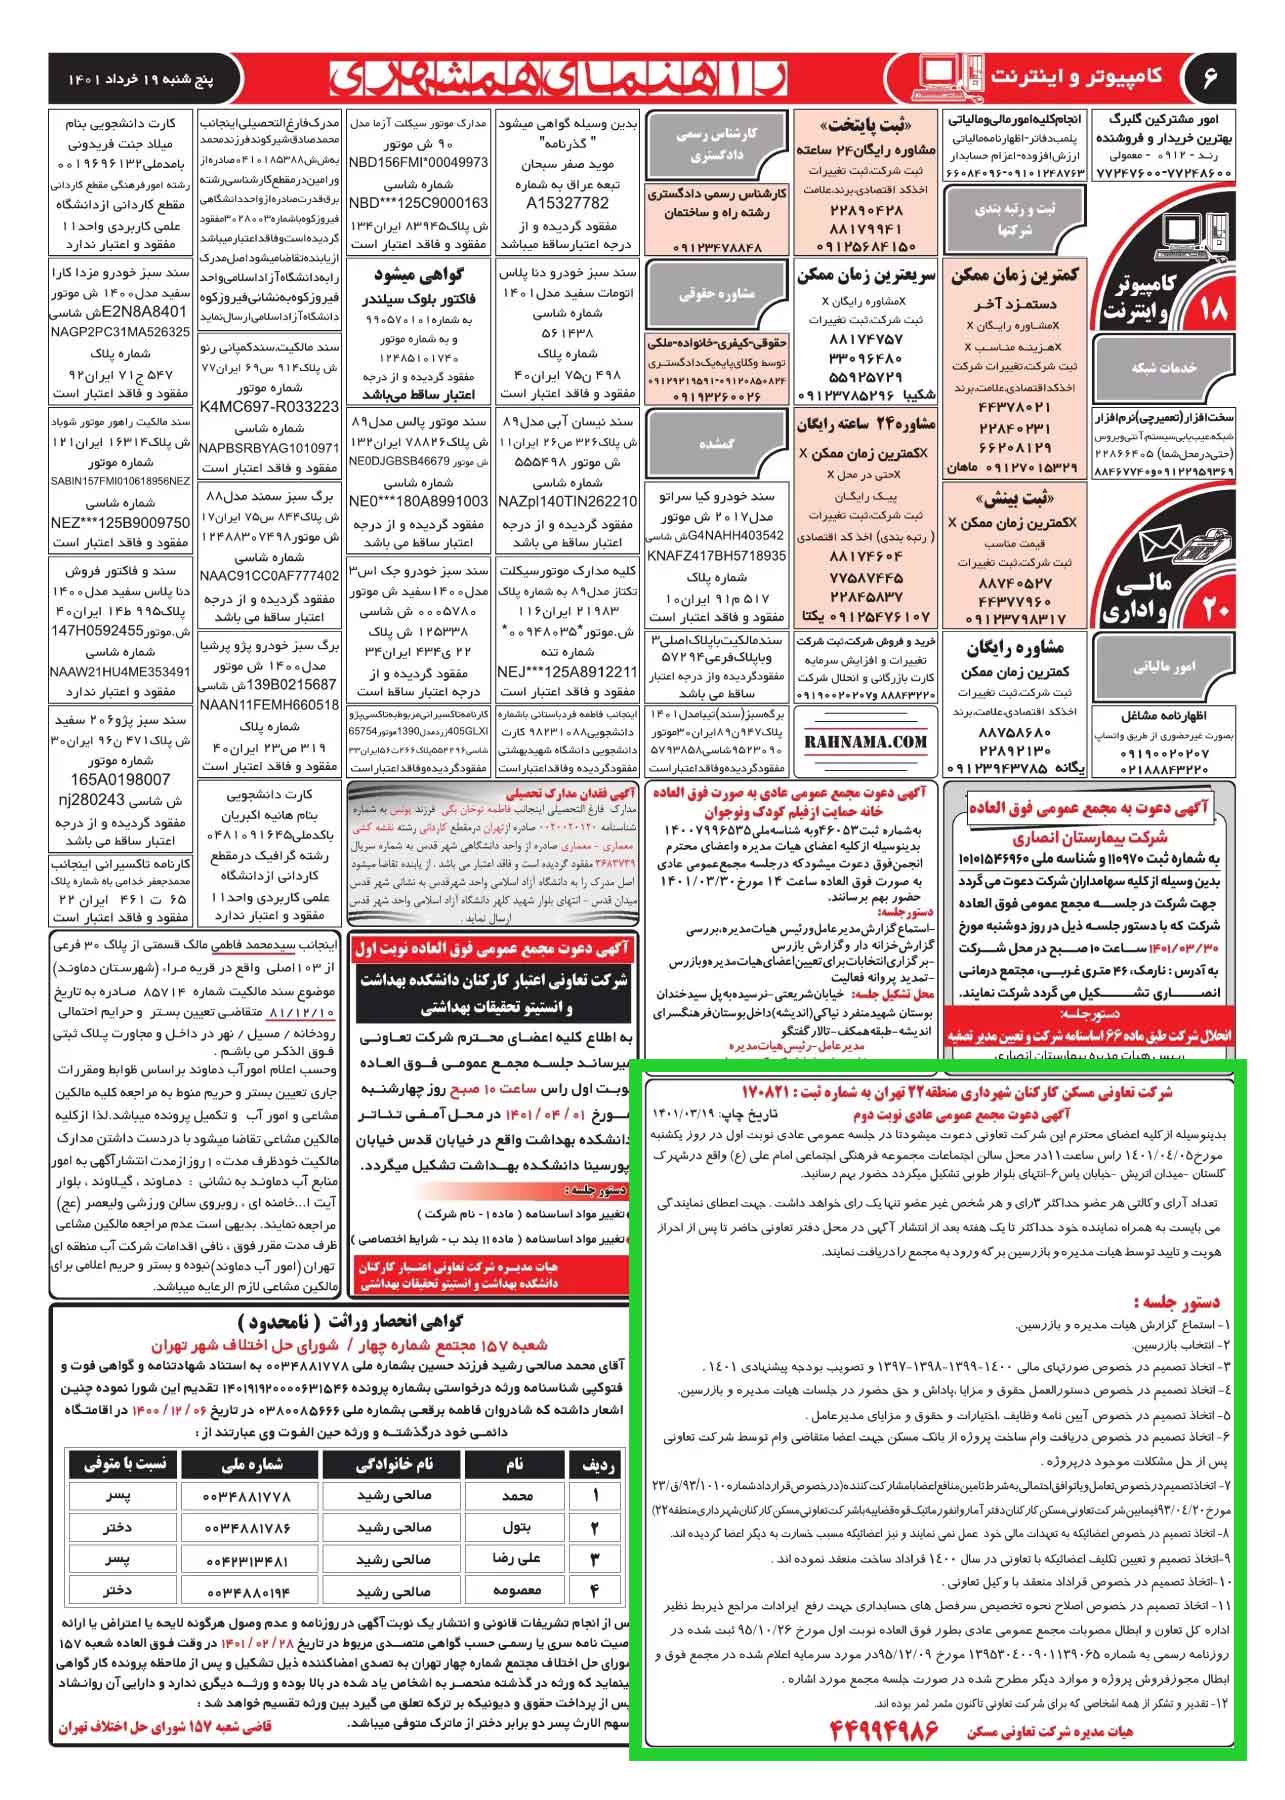 hamshahri-news1401-04-05